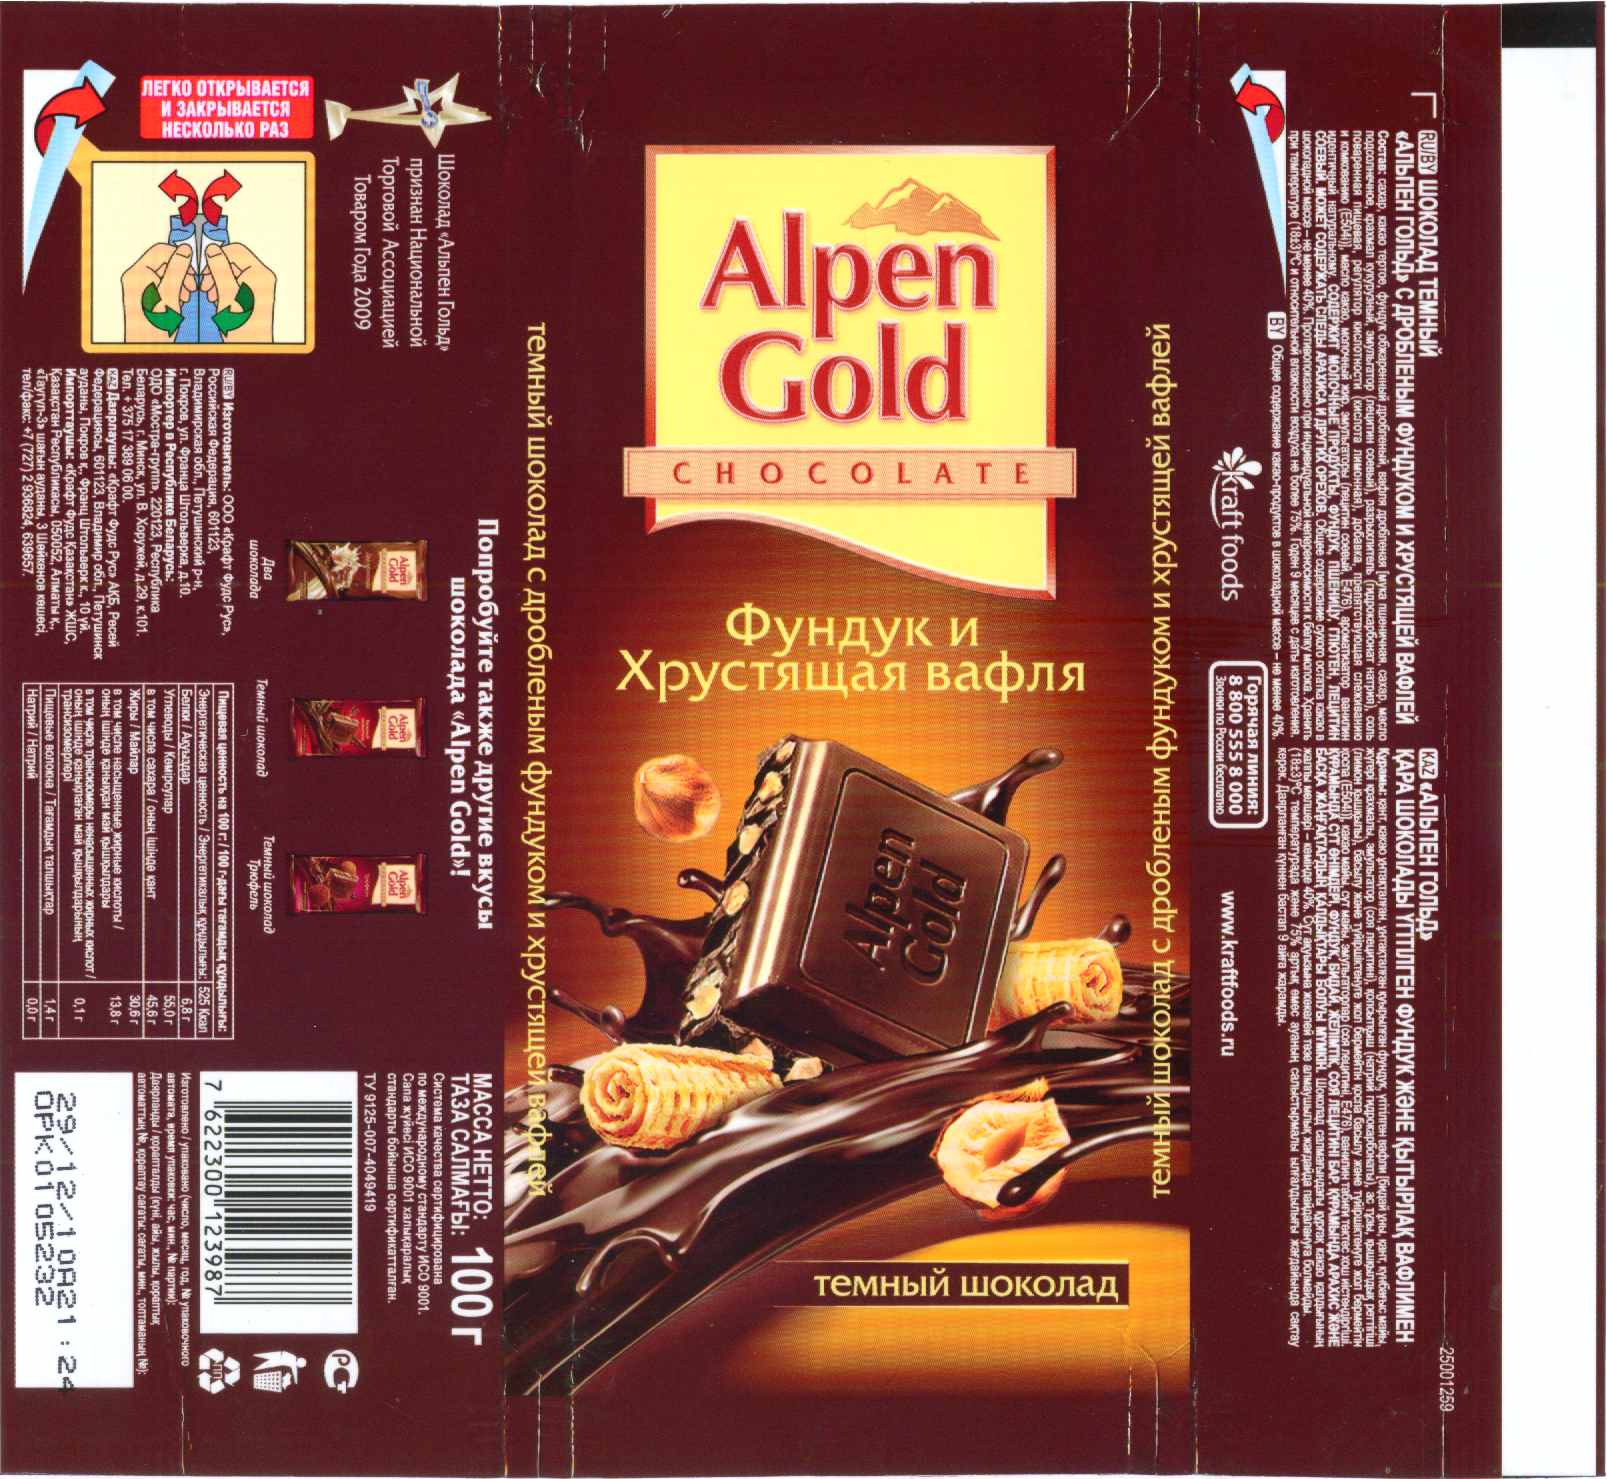 Упаковка шоколада Альпен Гольд 2010